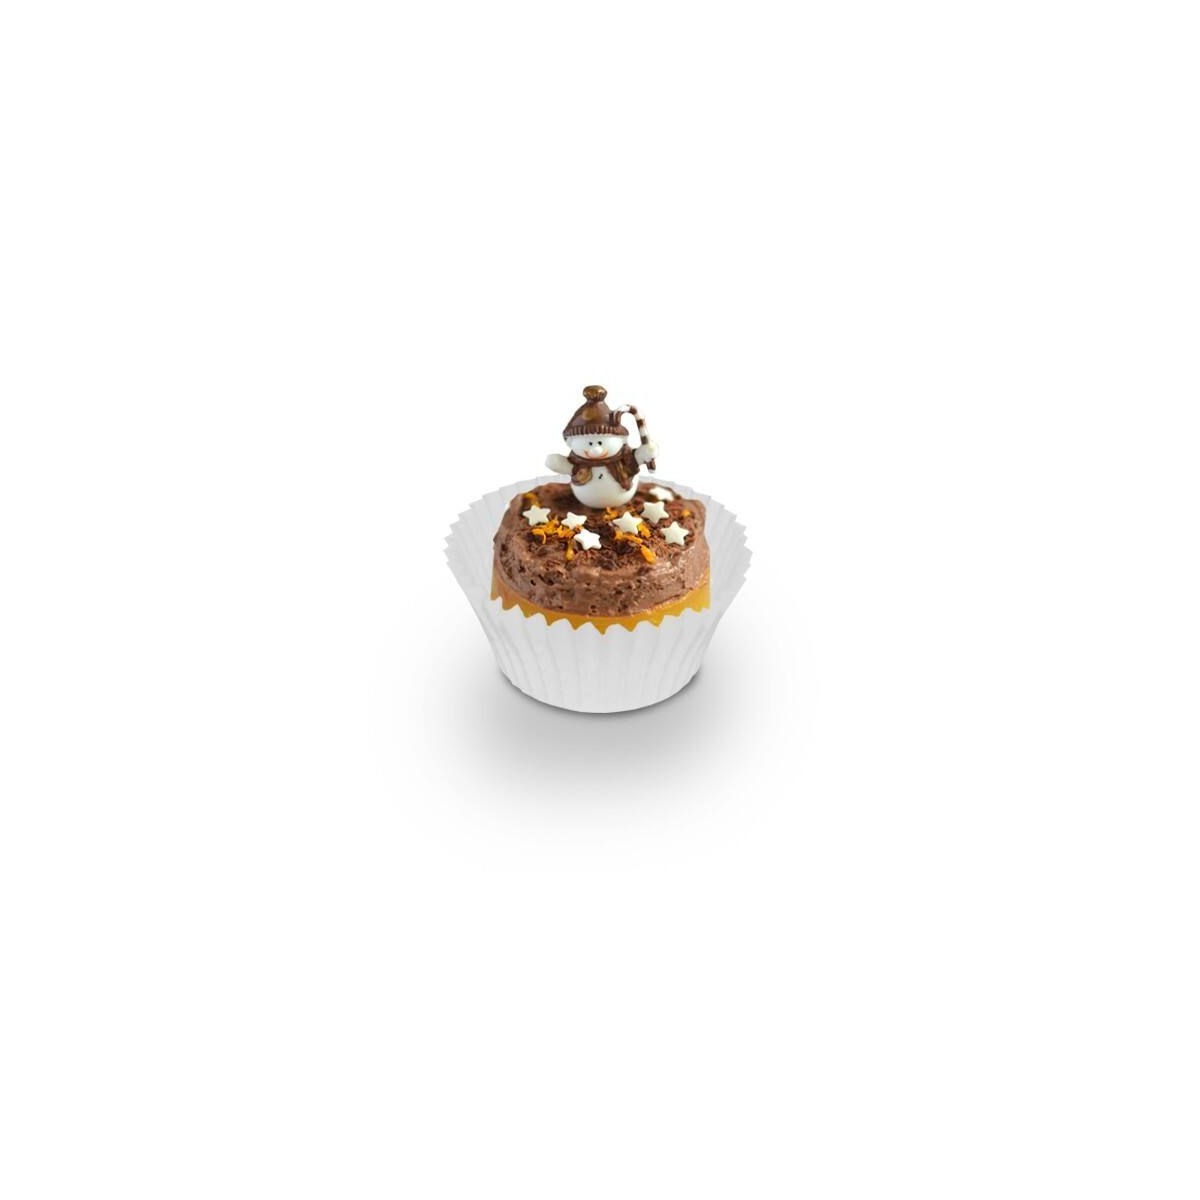 Caissette Cupcake Blanche pk/300 PME à 4,49 €